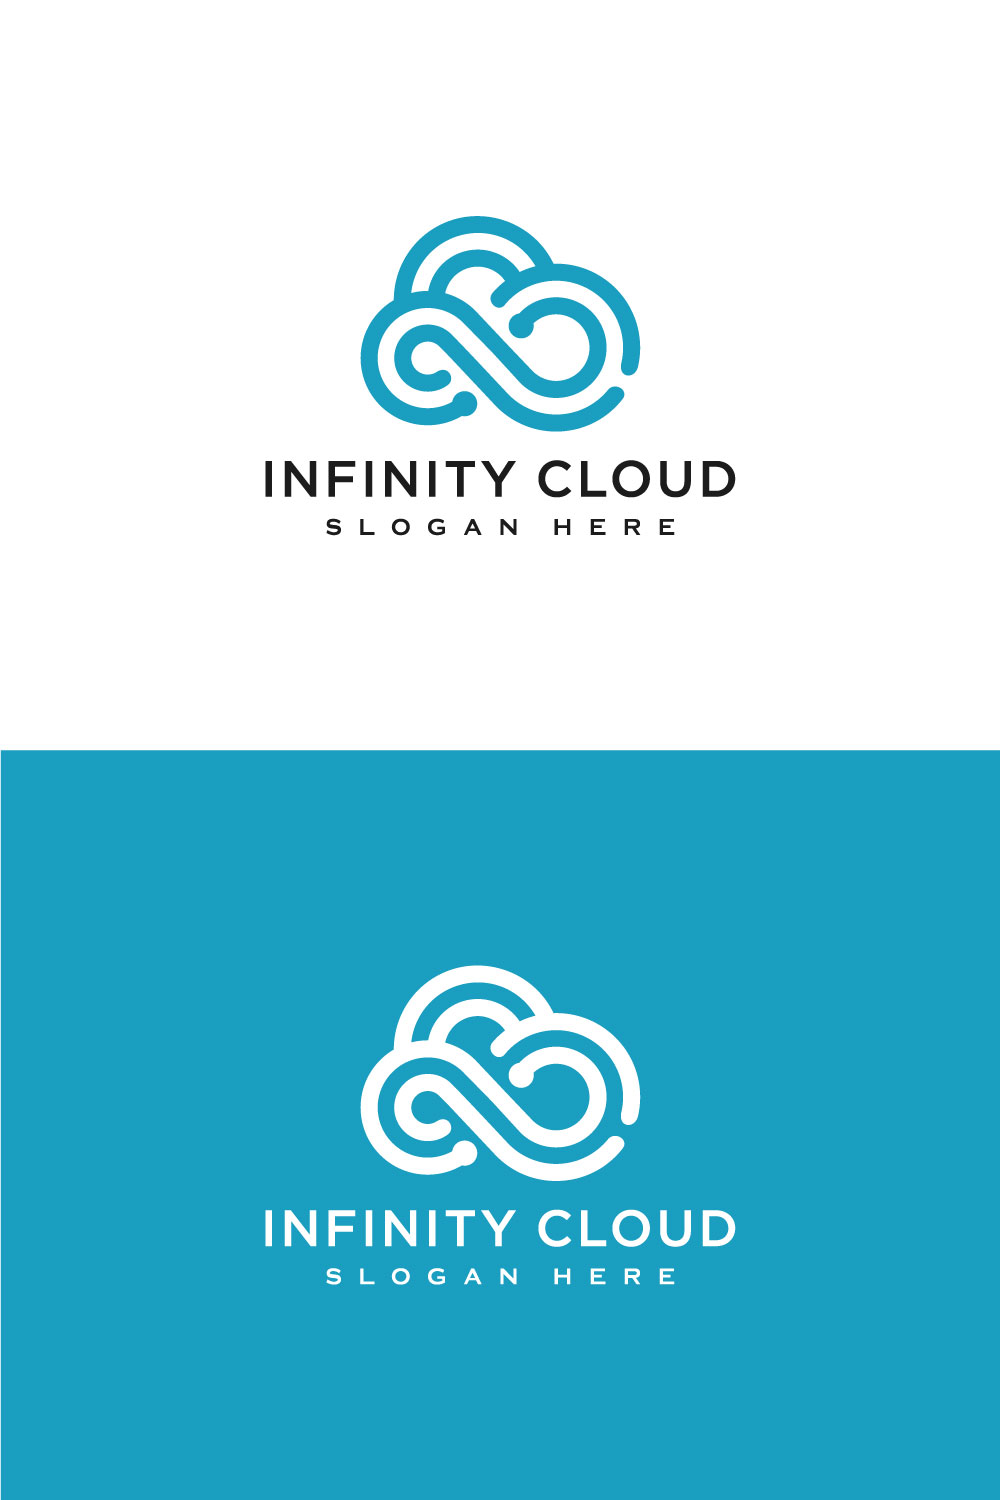 Infinity Cloud Logo Design Vector pinterst.